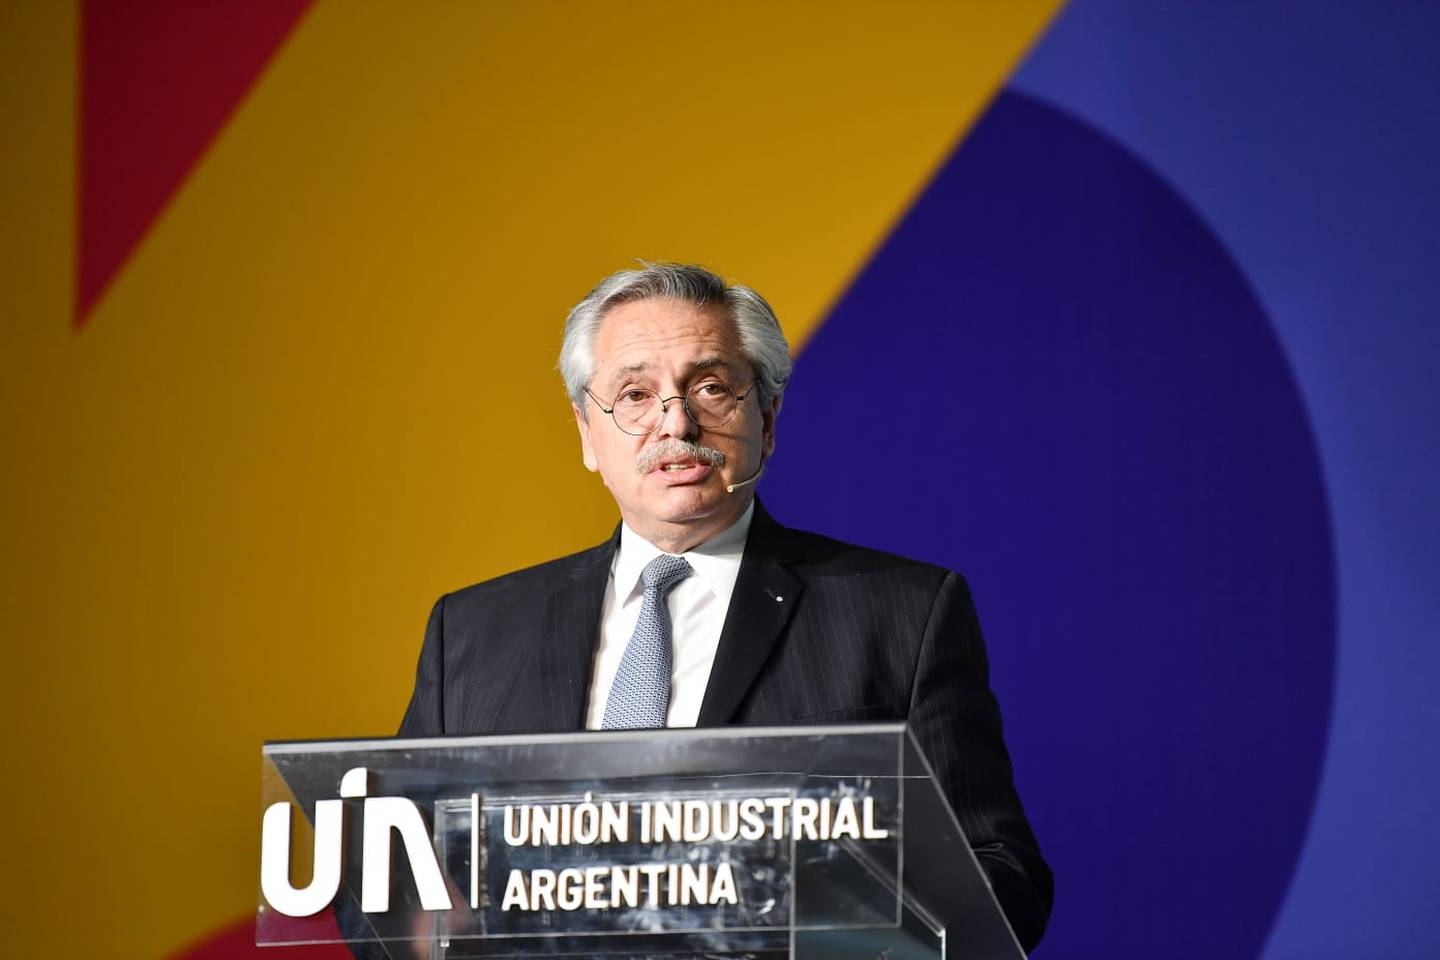 El Presidente argentino participó de la conferencia industrialdfd